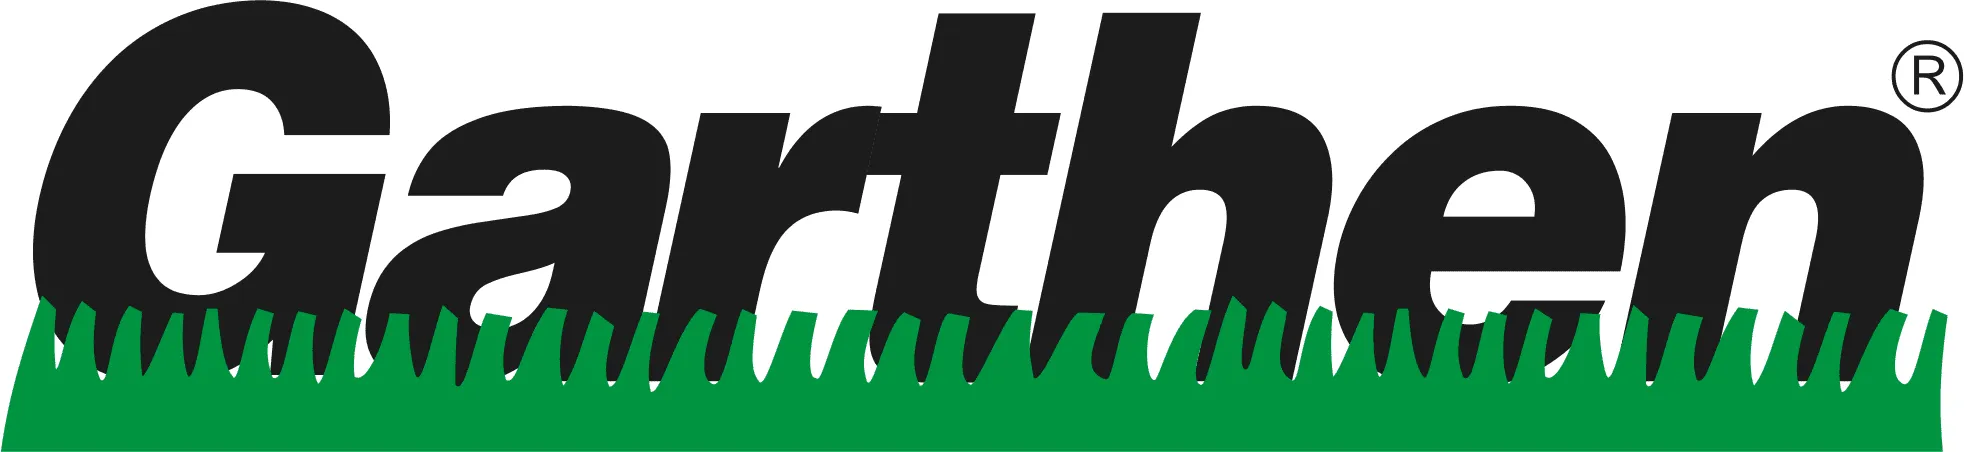 marca-garthen-logo-2_24_11zon